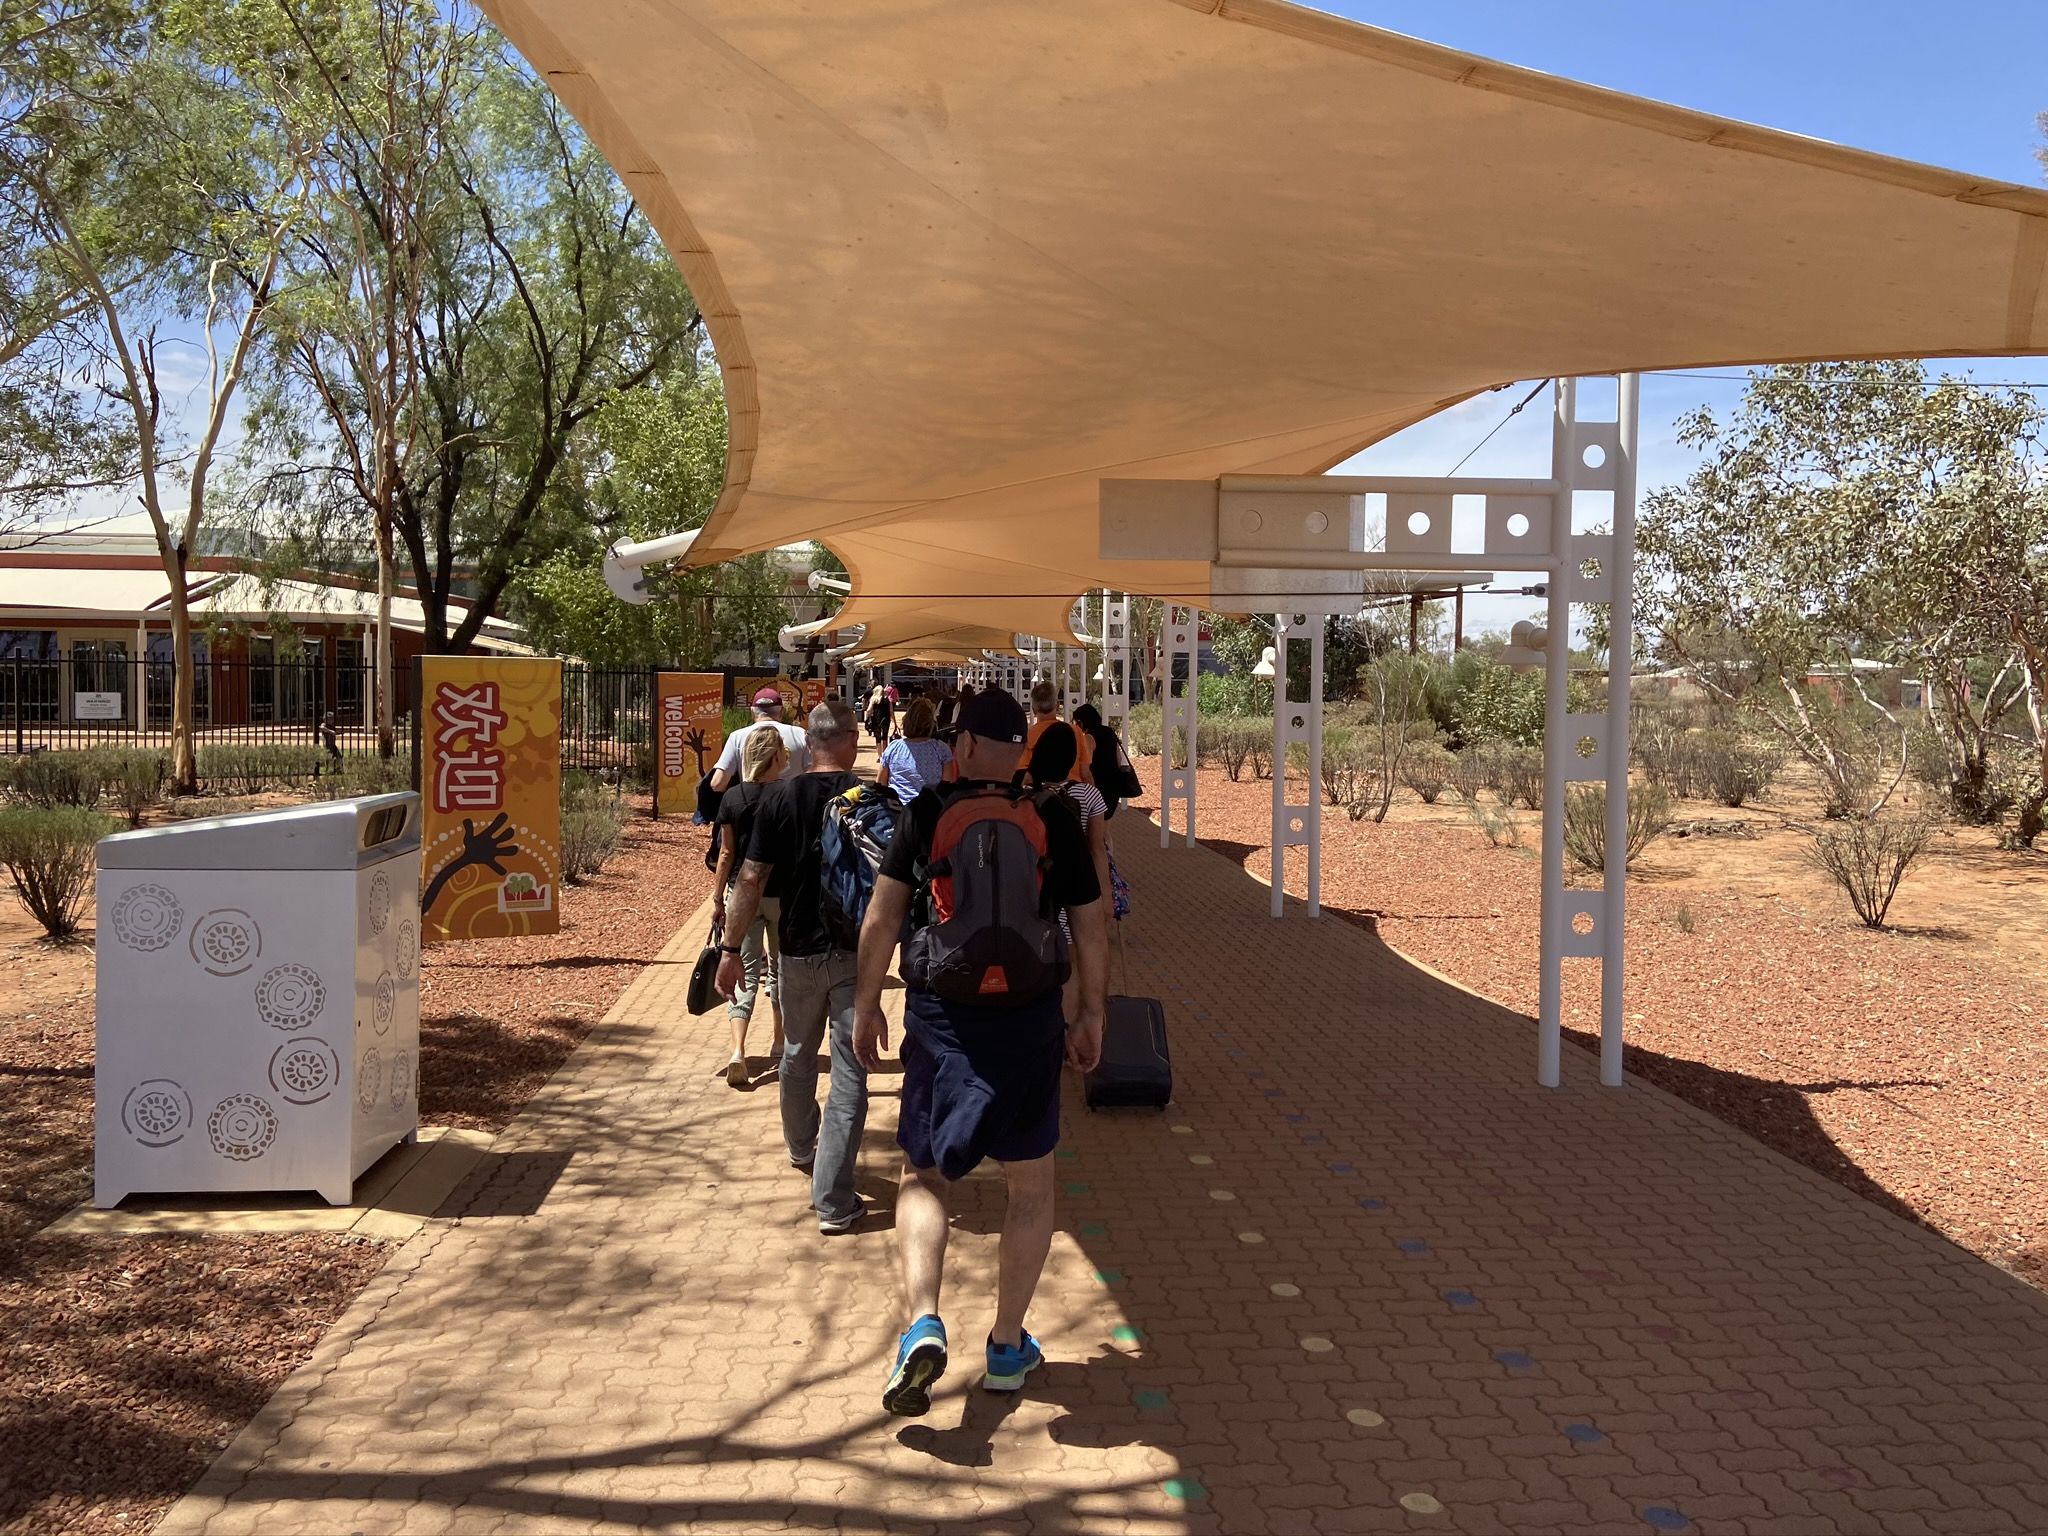 Ankunft in Alice Springs